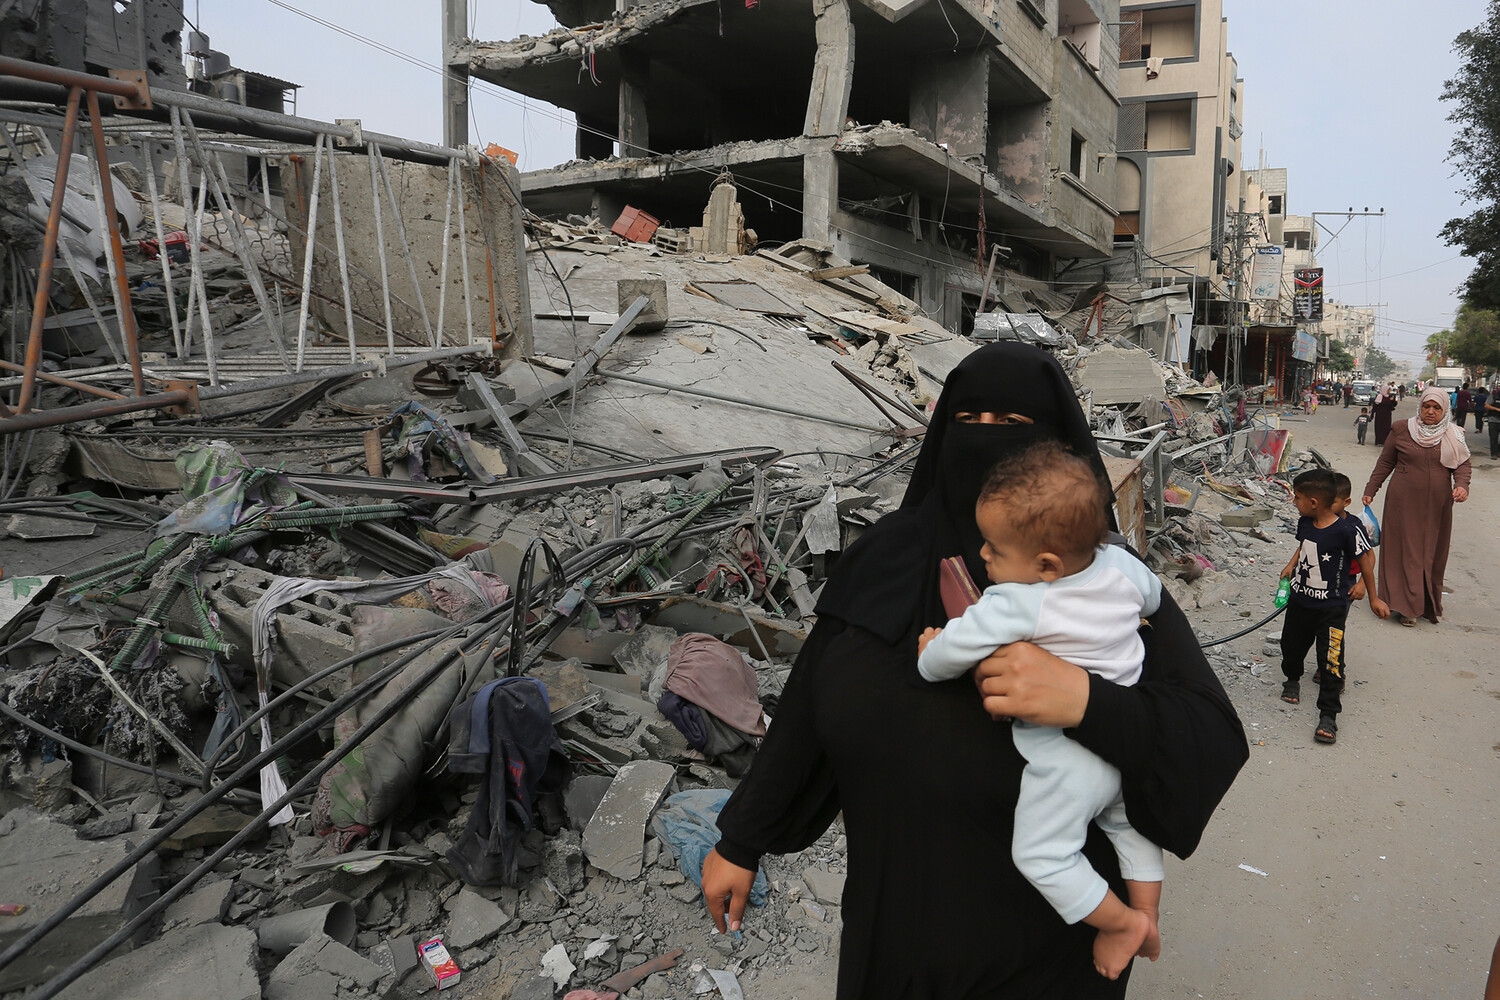 В ЮНИСЕФ назвали число детей, оставшихся в секторе Газа